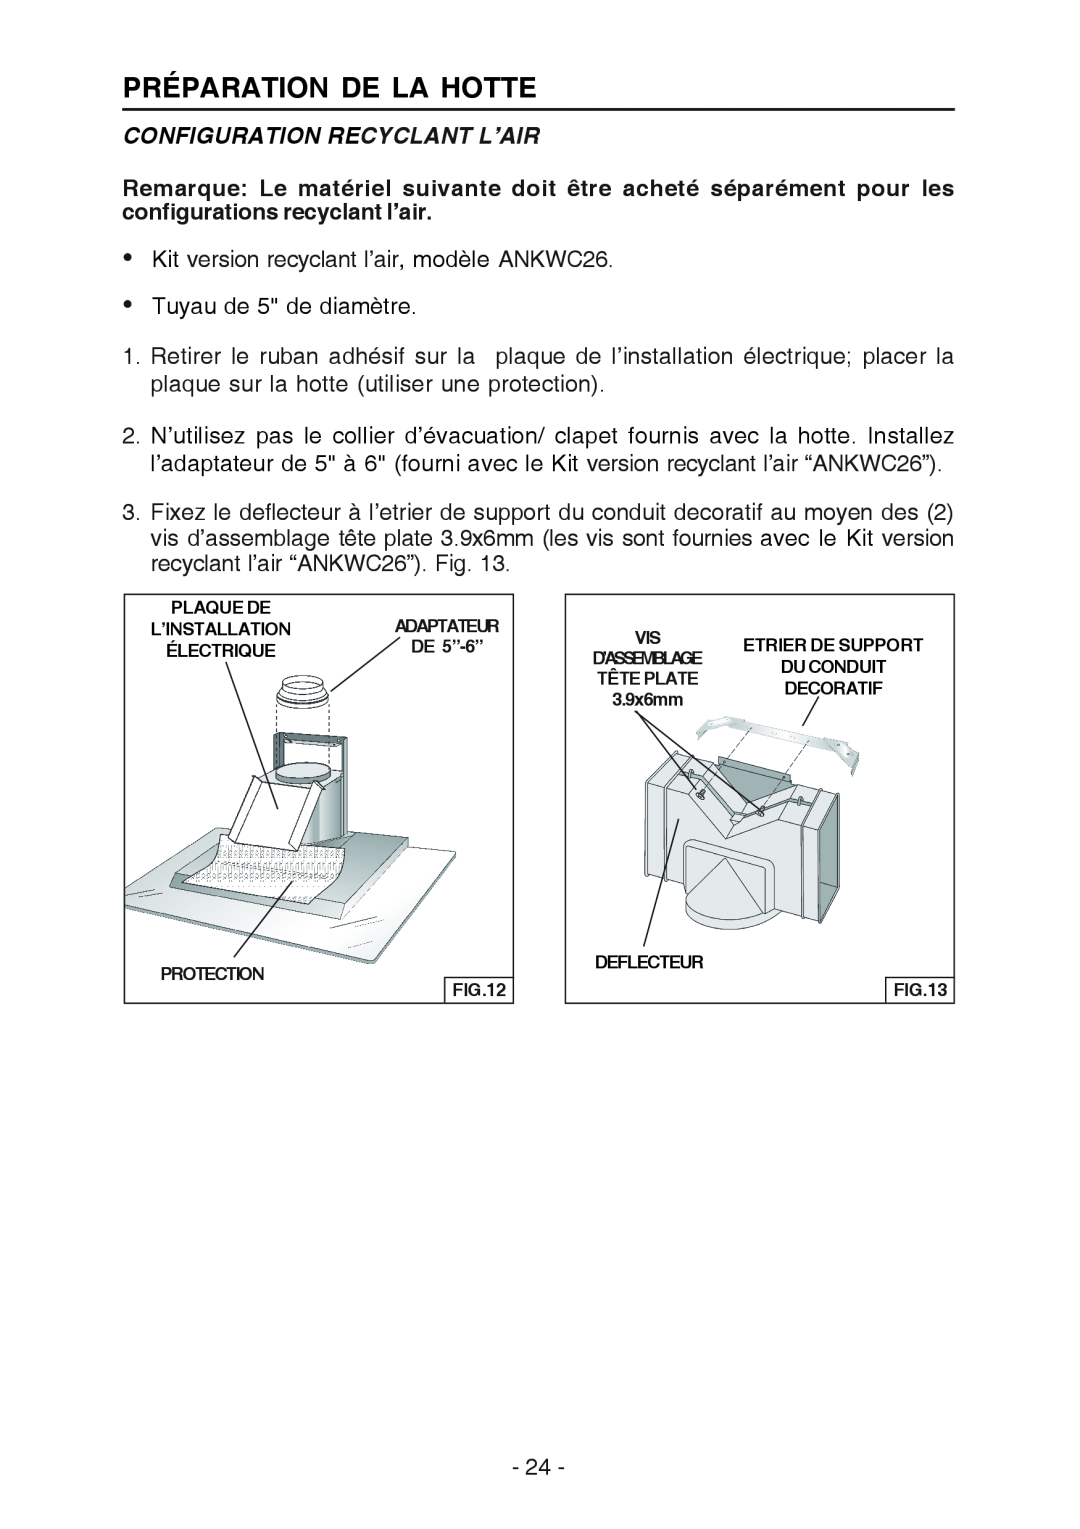 Broan WC26I manual Configuration Recyclant L’Air, Préparation De La Hotte 